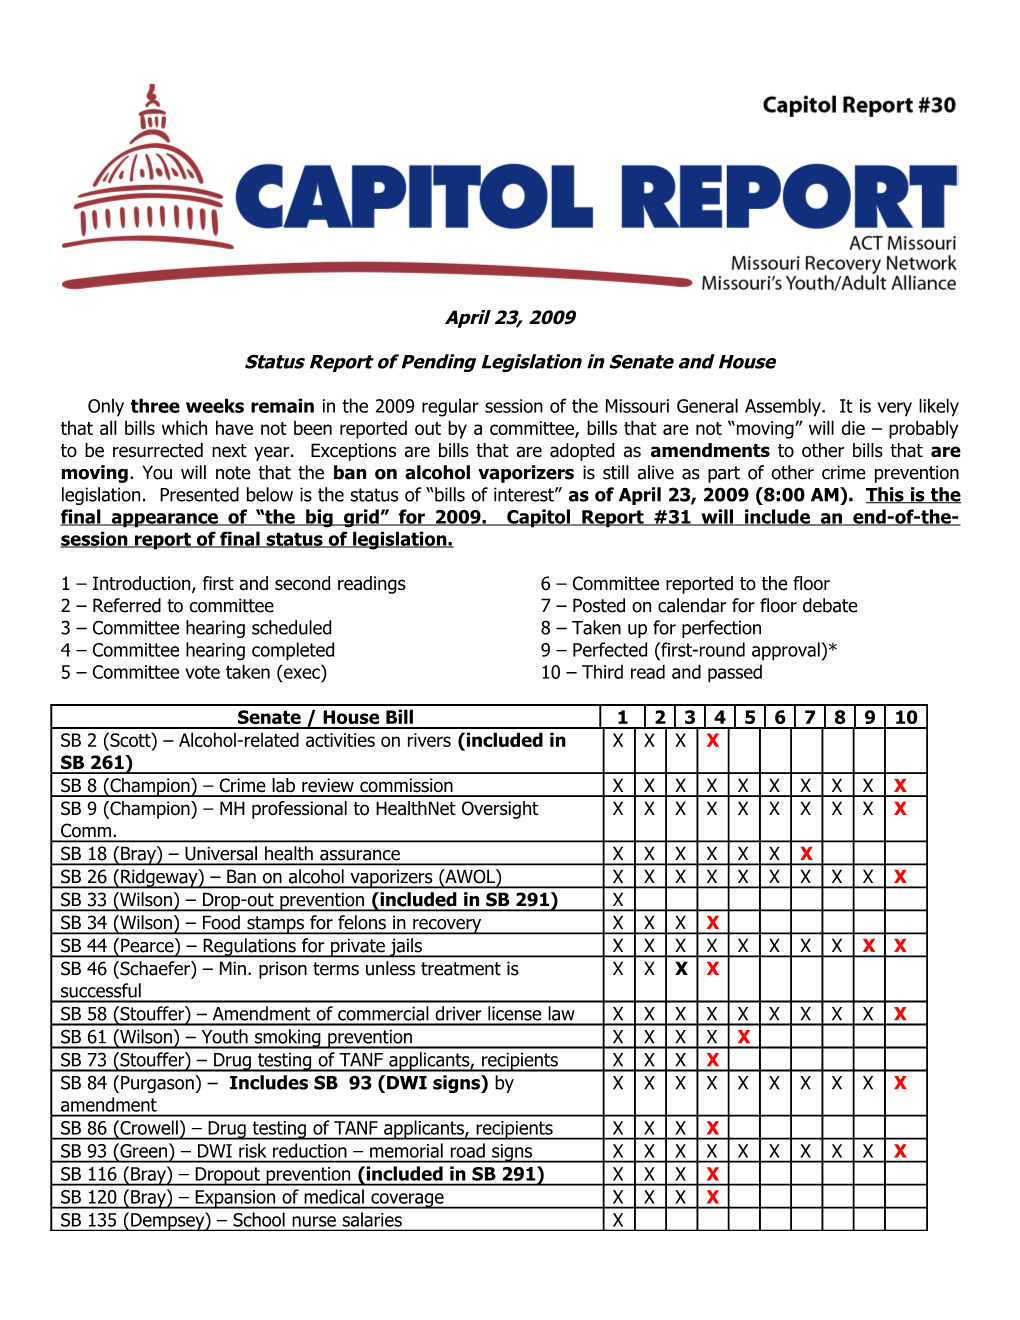 Status Report of Pending Legislation in Senate and House